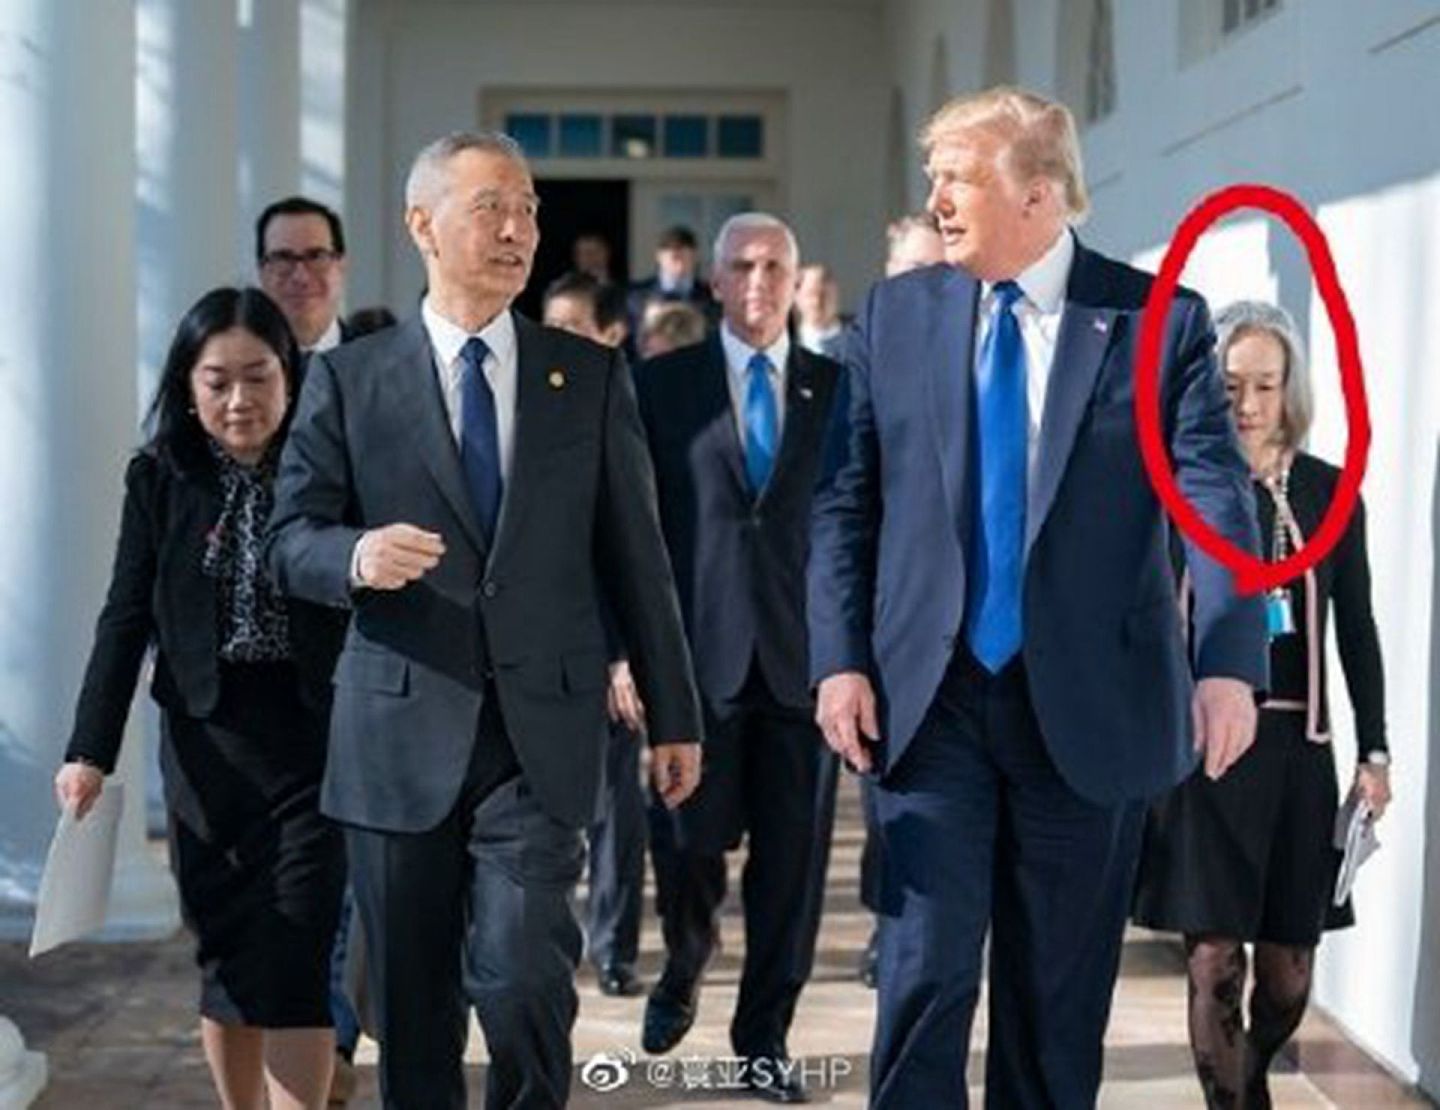 钟岚曾经担任过美国前总统特朗普（Donald Trump）的中文翻译。（微博＠寰亚SYHP）